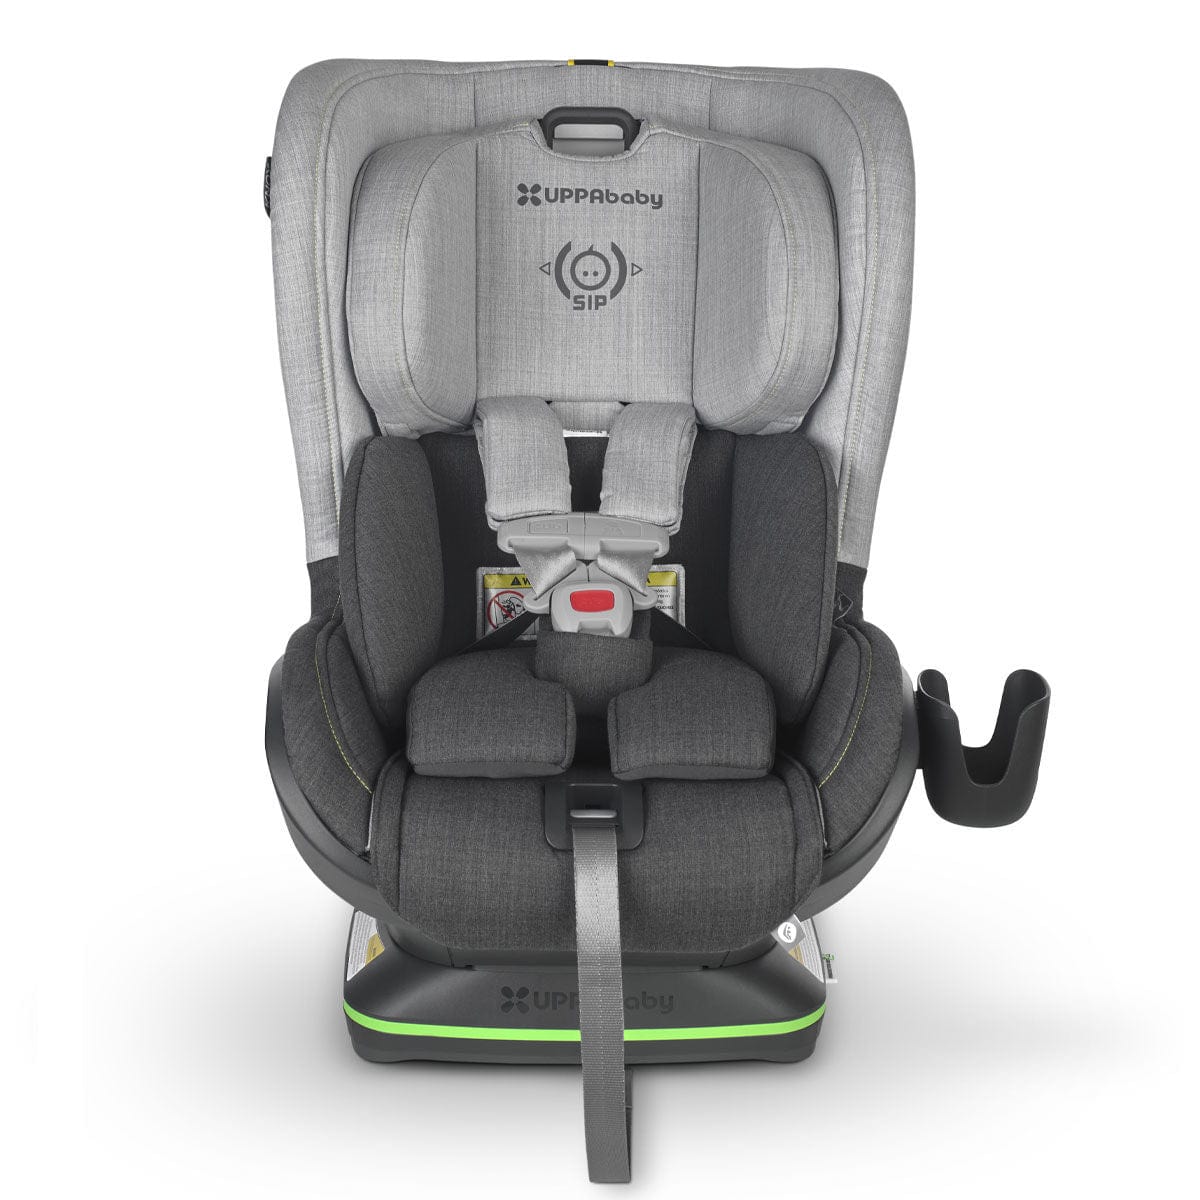 UPPAbaby convertible car seat UPPAbaby KNOX Convertible Car Seat - Jordan (Merino Wool)